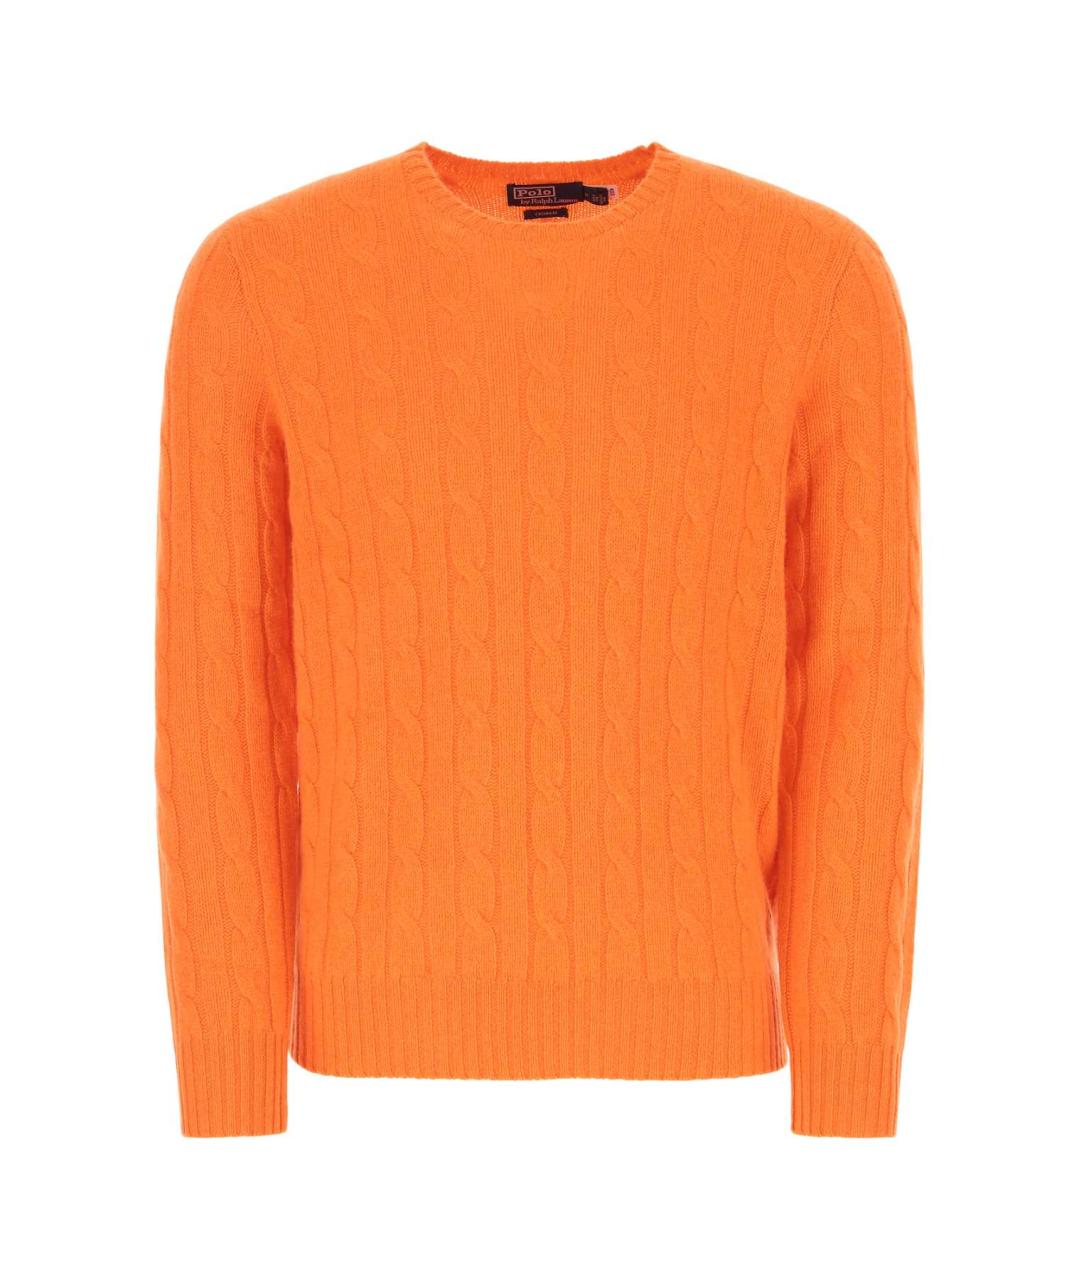 POLO RALPH LAUREN Оранжевый кашемировый джемпер / свитер, фото 1